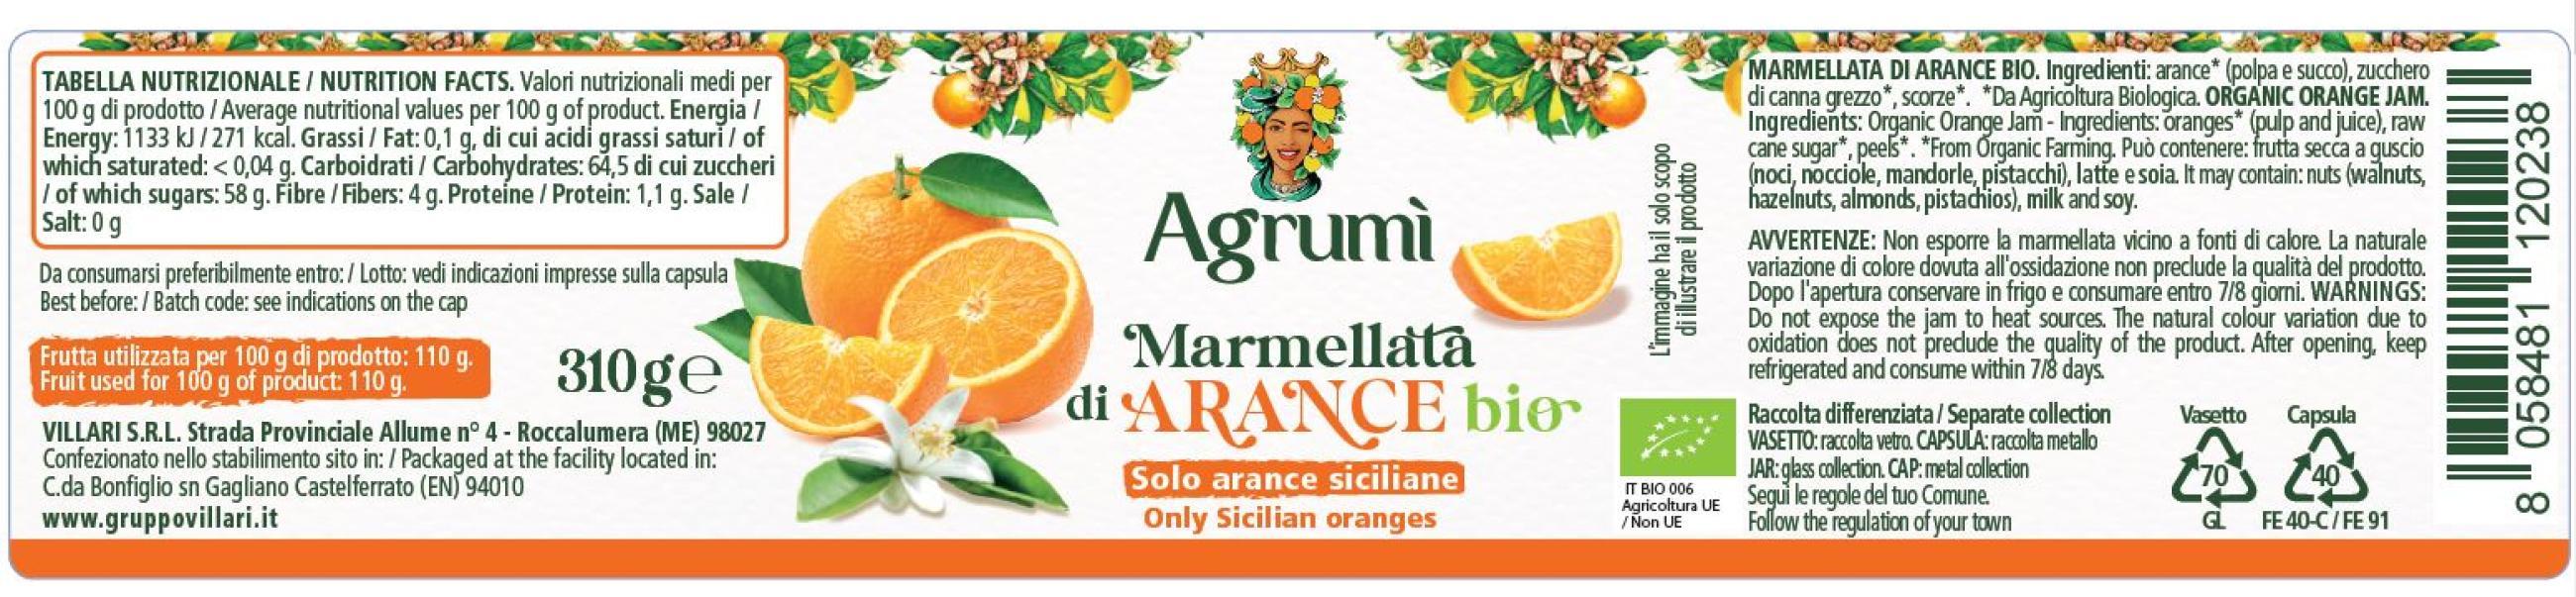 Marmellata di arance BIO Agrumi ricetta tradizionale 310gr x 6pz. Etichetta con valori nutrizionali e ingredienti